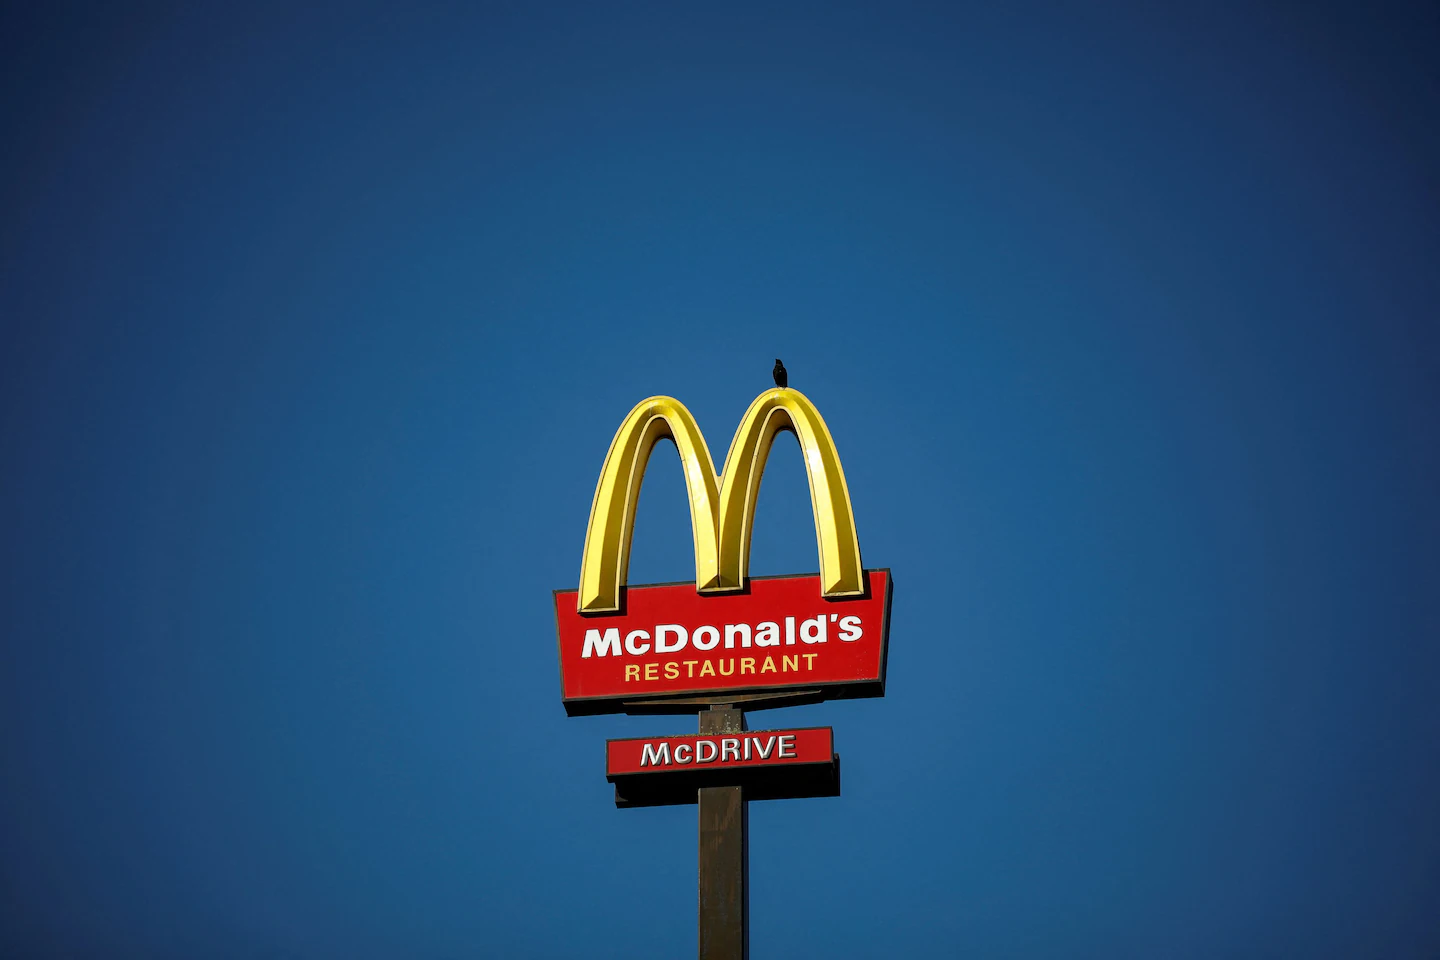 Carl Icahn inizia una lotta per procura con McDonald's per il benessere dei maiali

